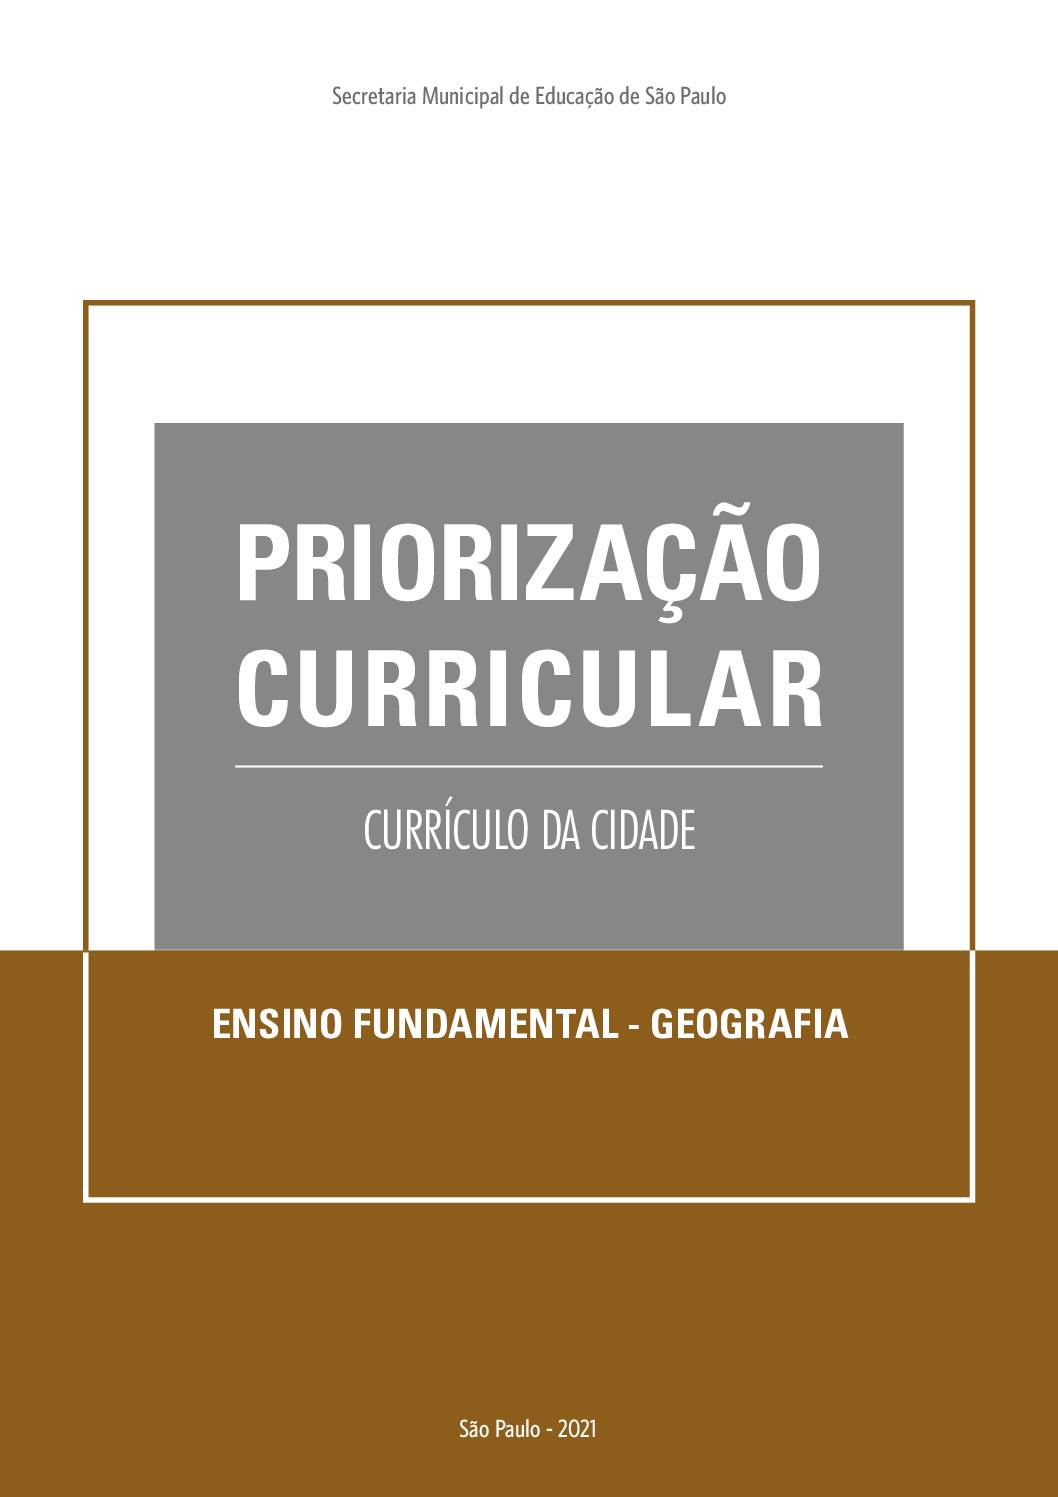 Publicação que apresenta os objetivos de aprendizagem prioritários do Currículo da Cidade de Geografia para o Ensino Fundamental.